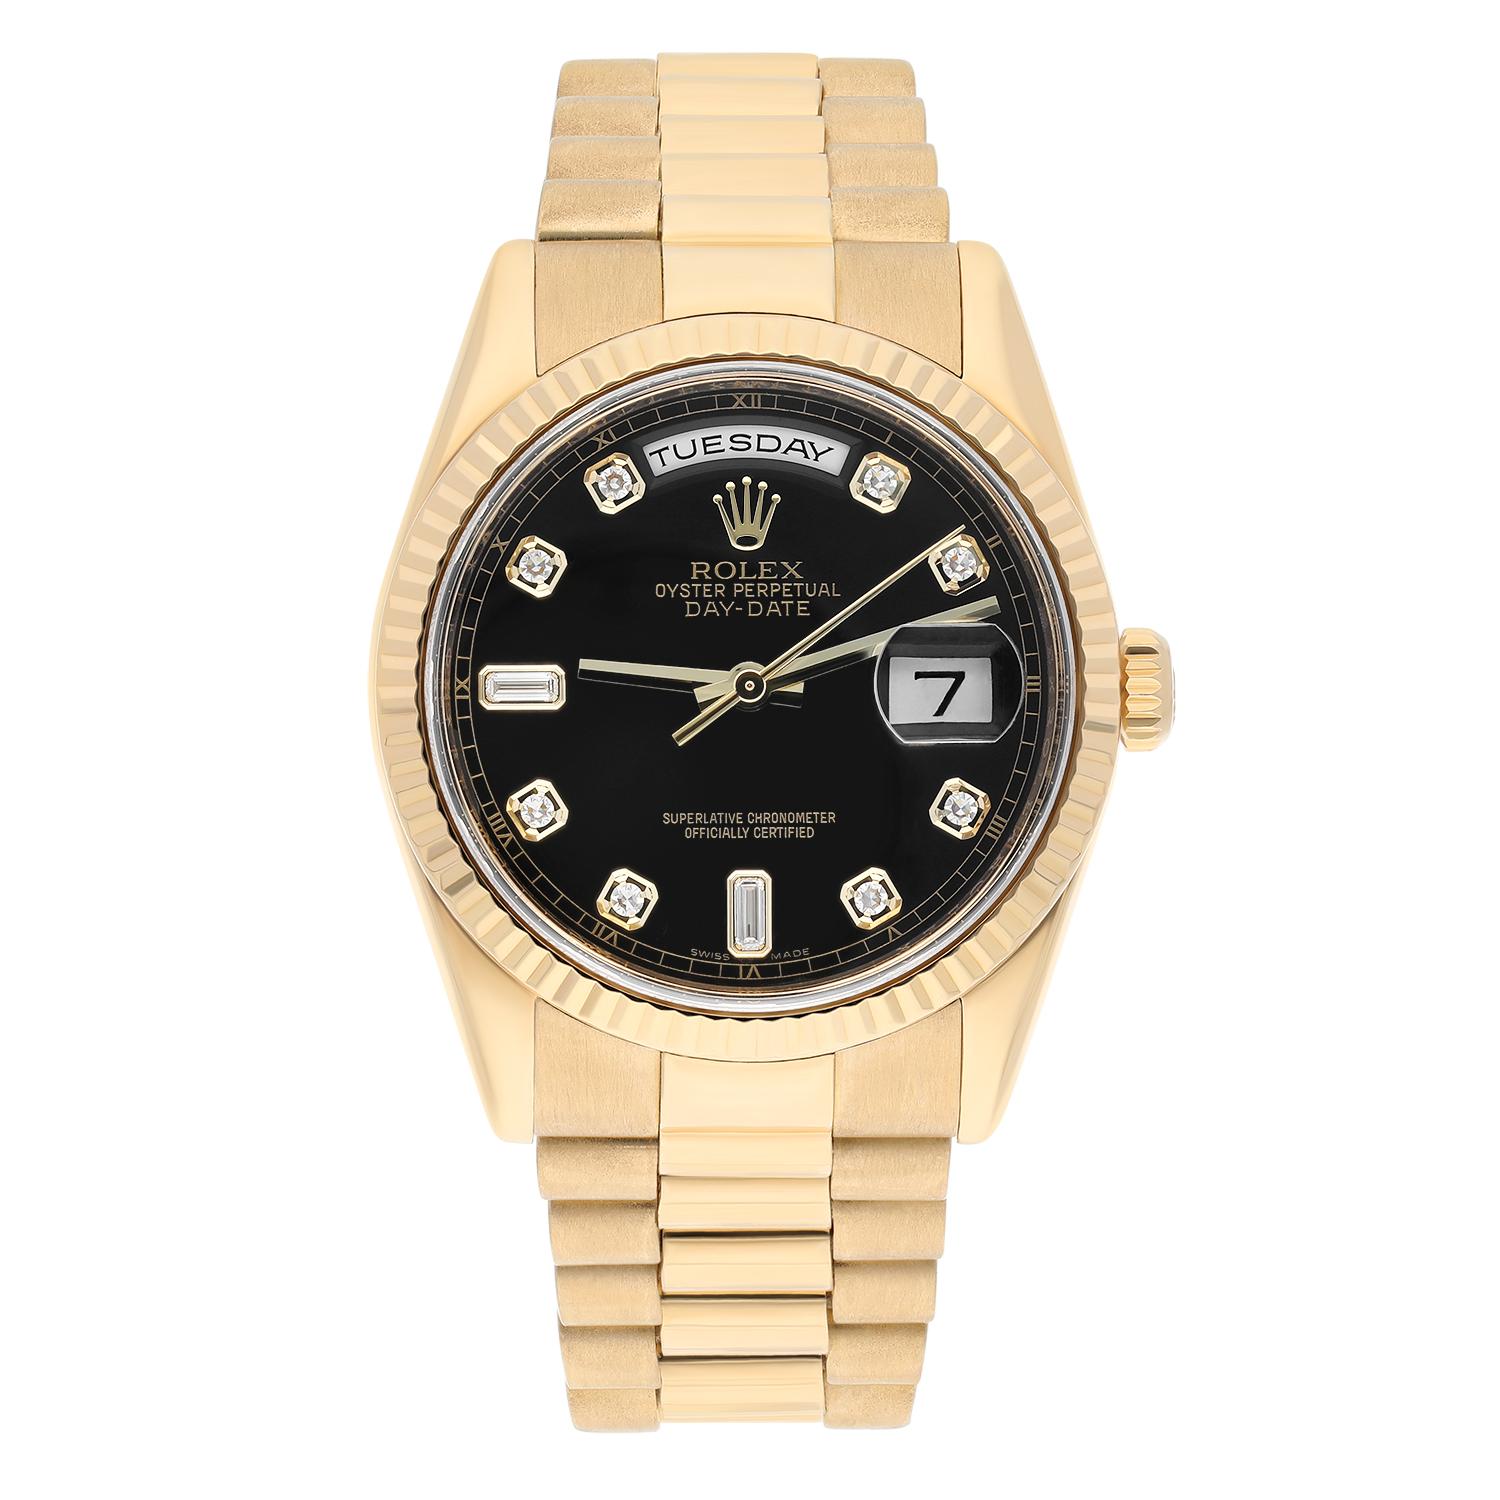 Rolex Day Date 118238 Presidential 36mm 18K Yellow Gold Black Diamond Dial

Cette montre a été professionnellement polie, entretenue et ne présente aucune rayure ou imperfection visible. Il s'agit d'une véritable Rolex qui a été inspectée pour en